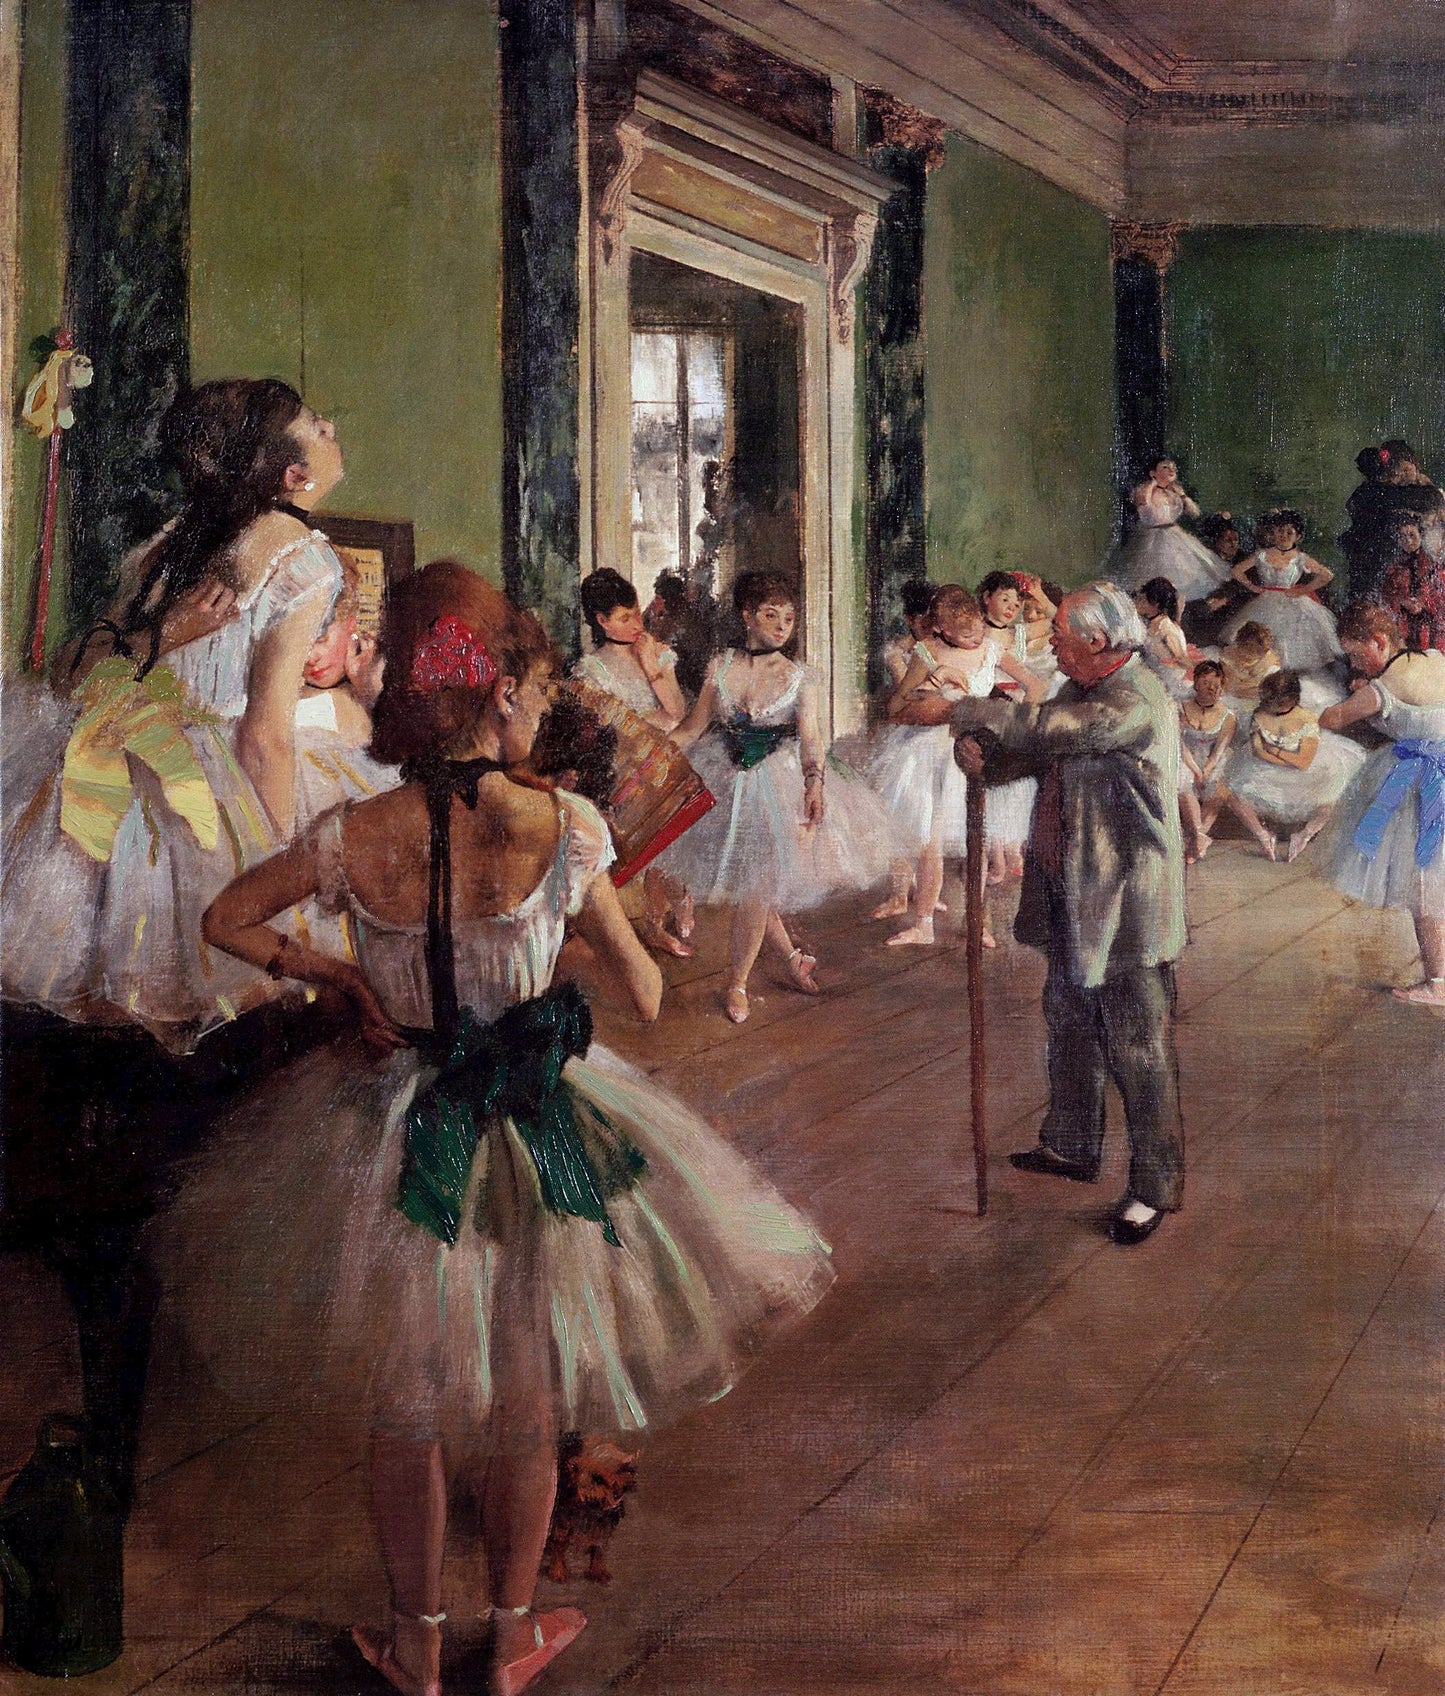 The dance class